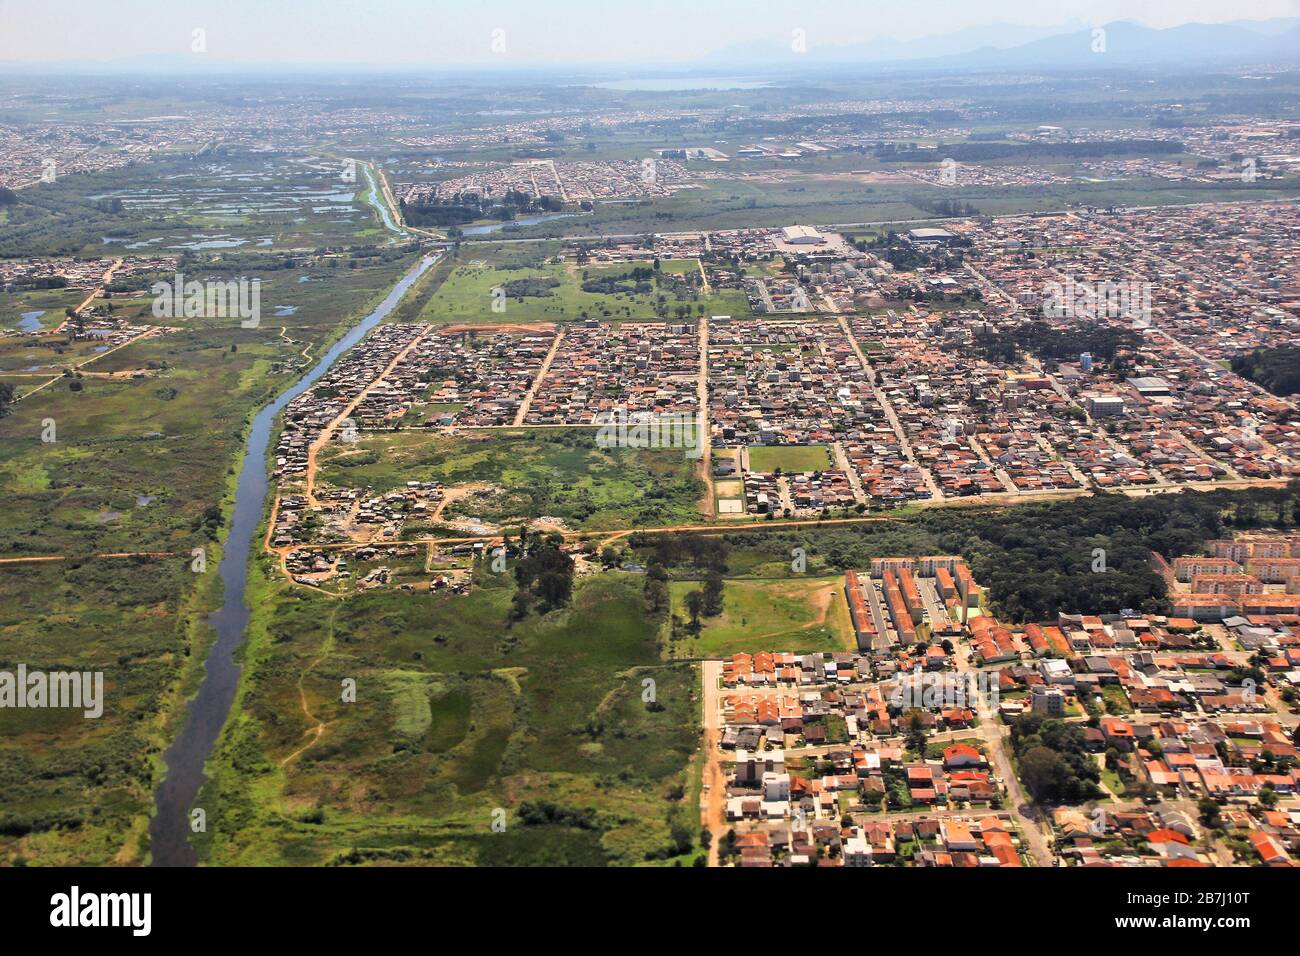 Sao Jose dos Pinhais, Brazil - aerial view of city suburbs. Iguazu river and Afonso Pena district. Stock Photo